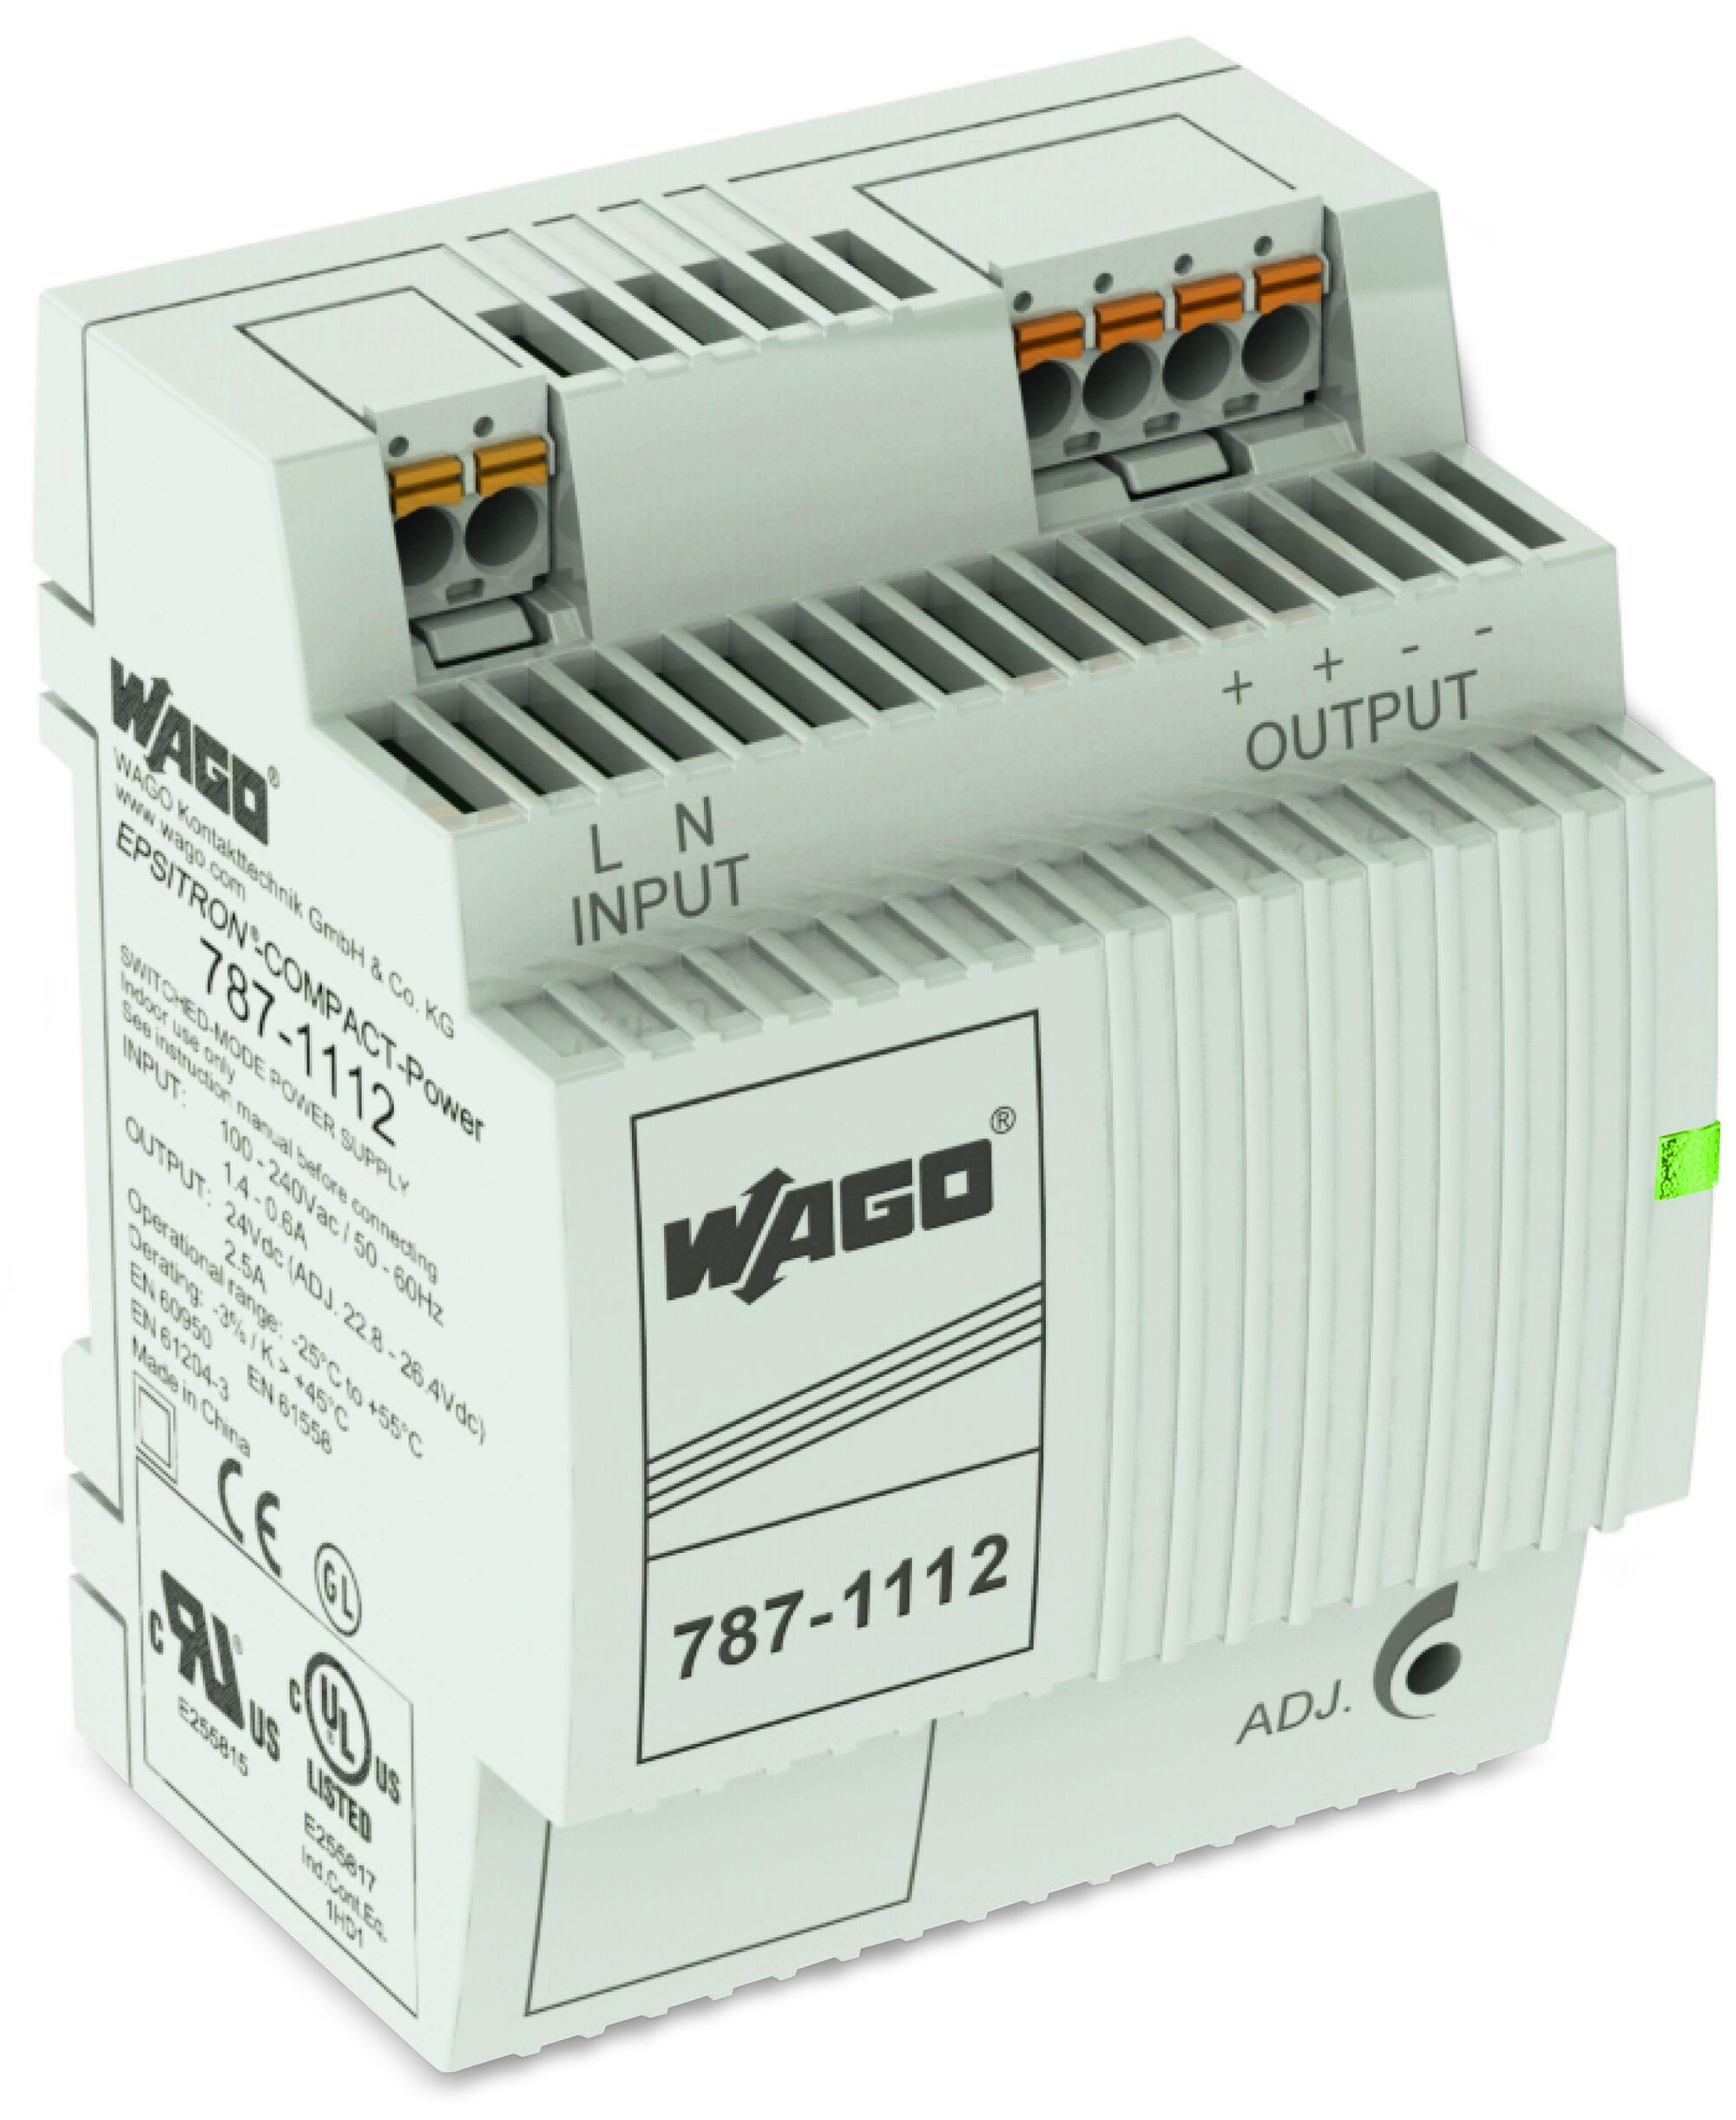 开关稳压电源; COMPACT紧凑型电源; 单相; 24 VDC输出电压; 2.5 A 输出电流; DC-OK LED